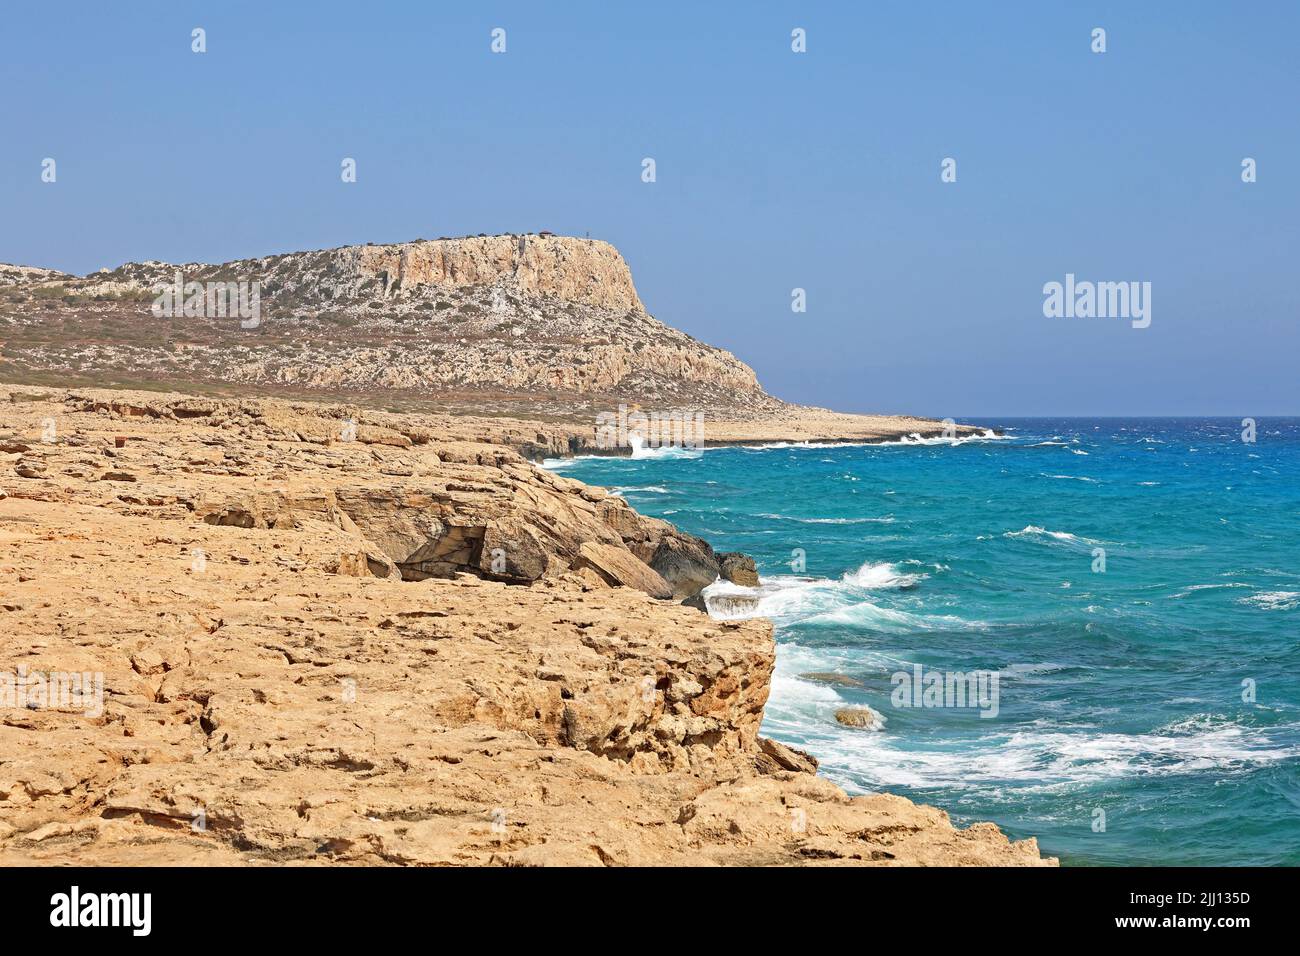 Seascape Cape Greco Peninsula Park, Cipro. E' una penisola montagnosa con un parco nazionale, una laguna turchese. Foto Stock